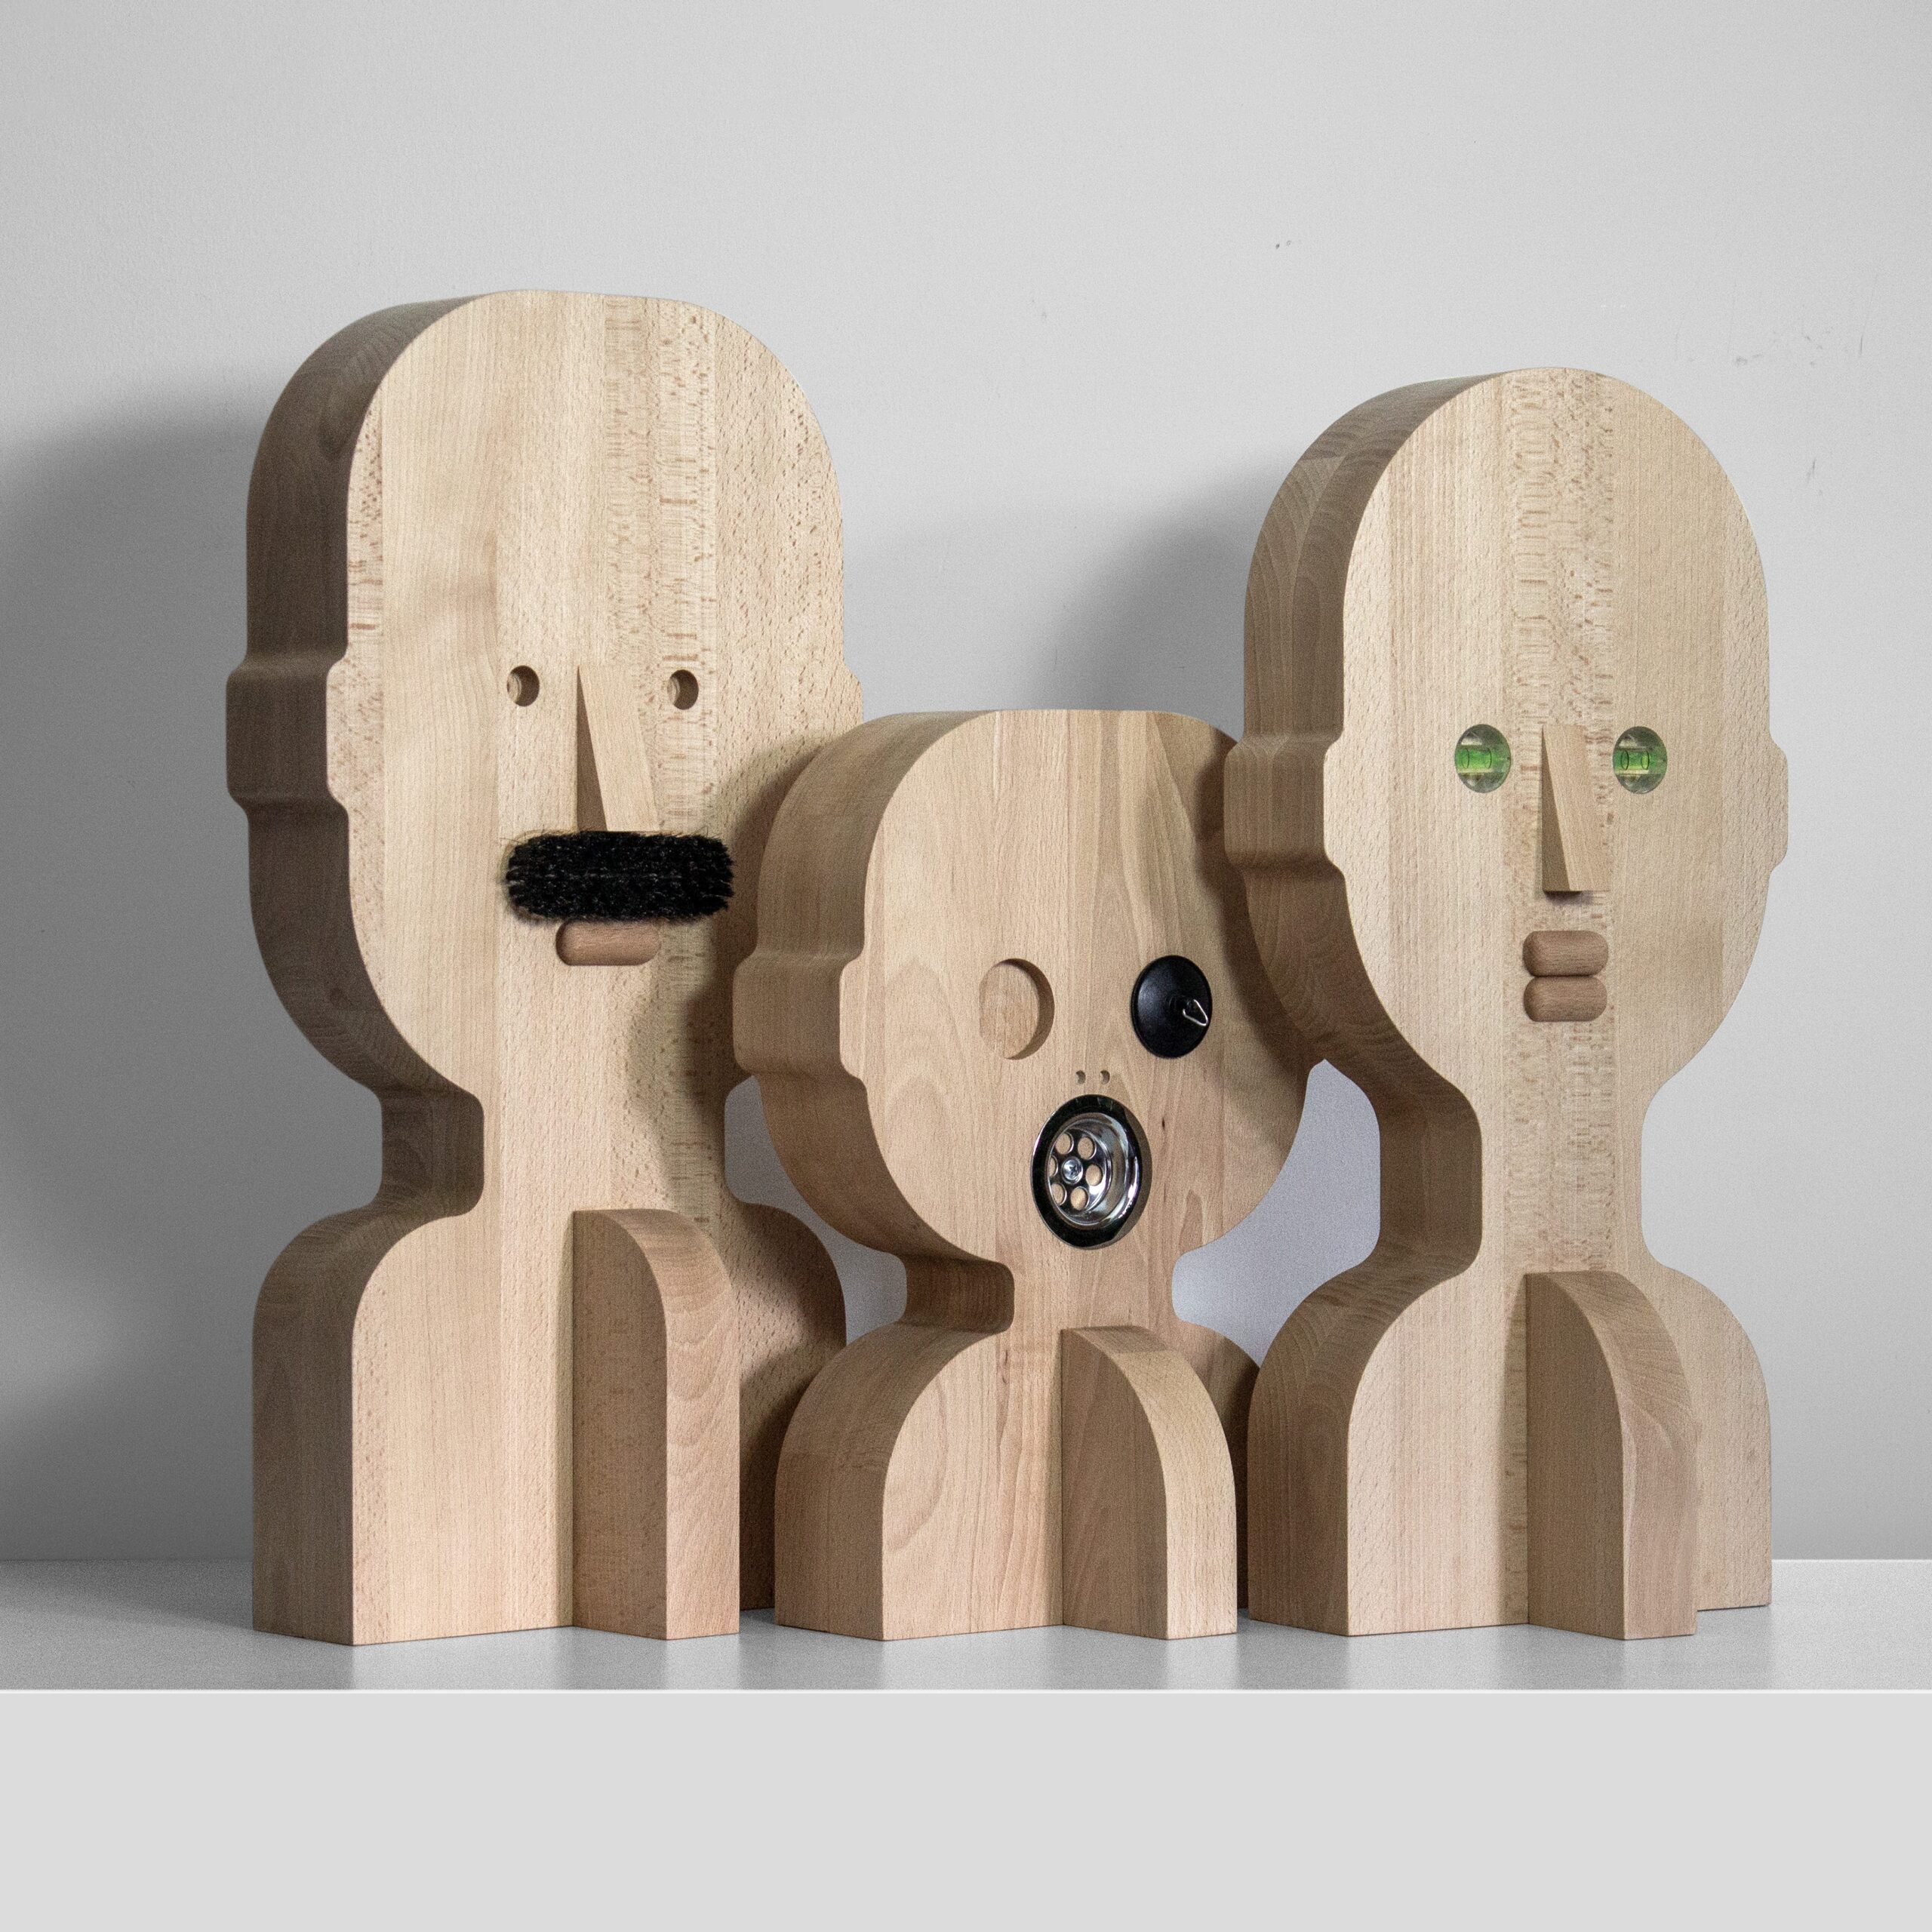 Fotografia przedstawia rzeźby Bartosza Muchy przypominające trzy ludzkie popiersia - dwóch osób dorosłych i dziecka. Praca zatytułowana jest "Umarła rodzina"